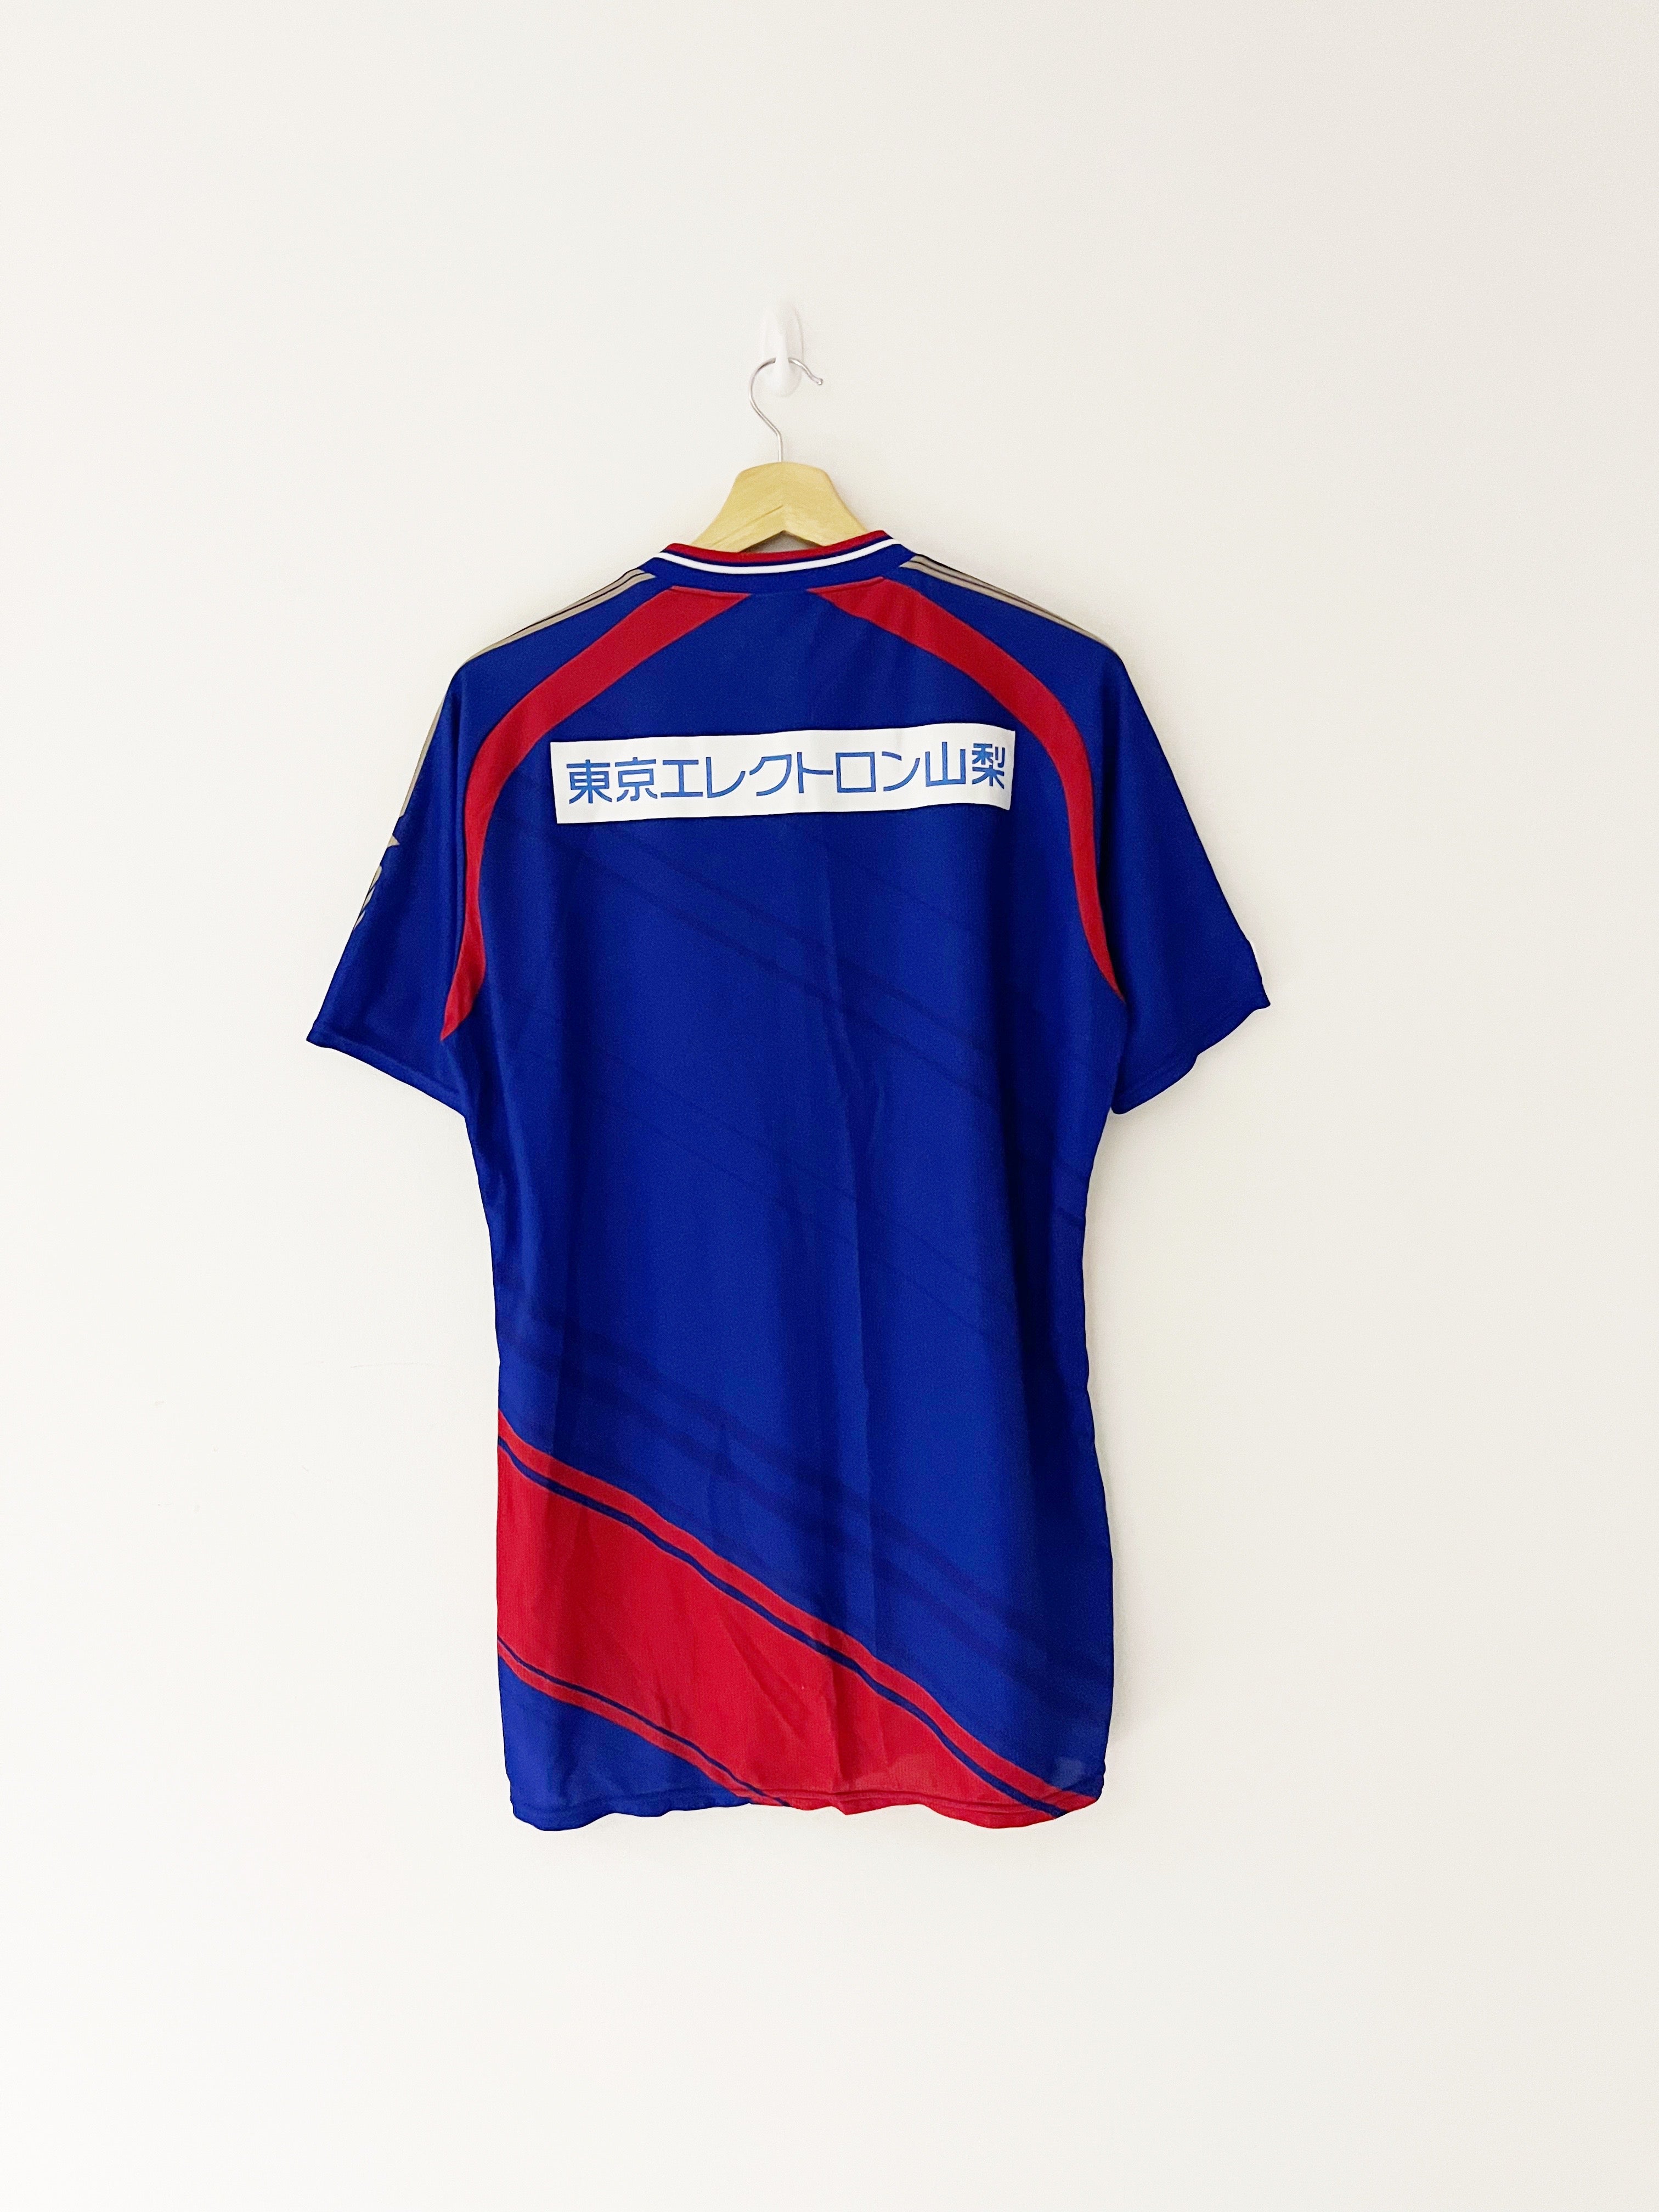 Camiseta de local Ventforet Kofu 2015/16 (XL) 9/10